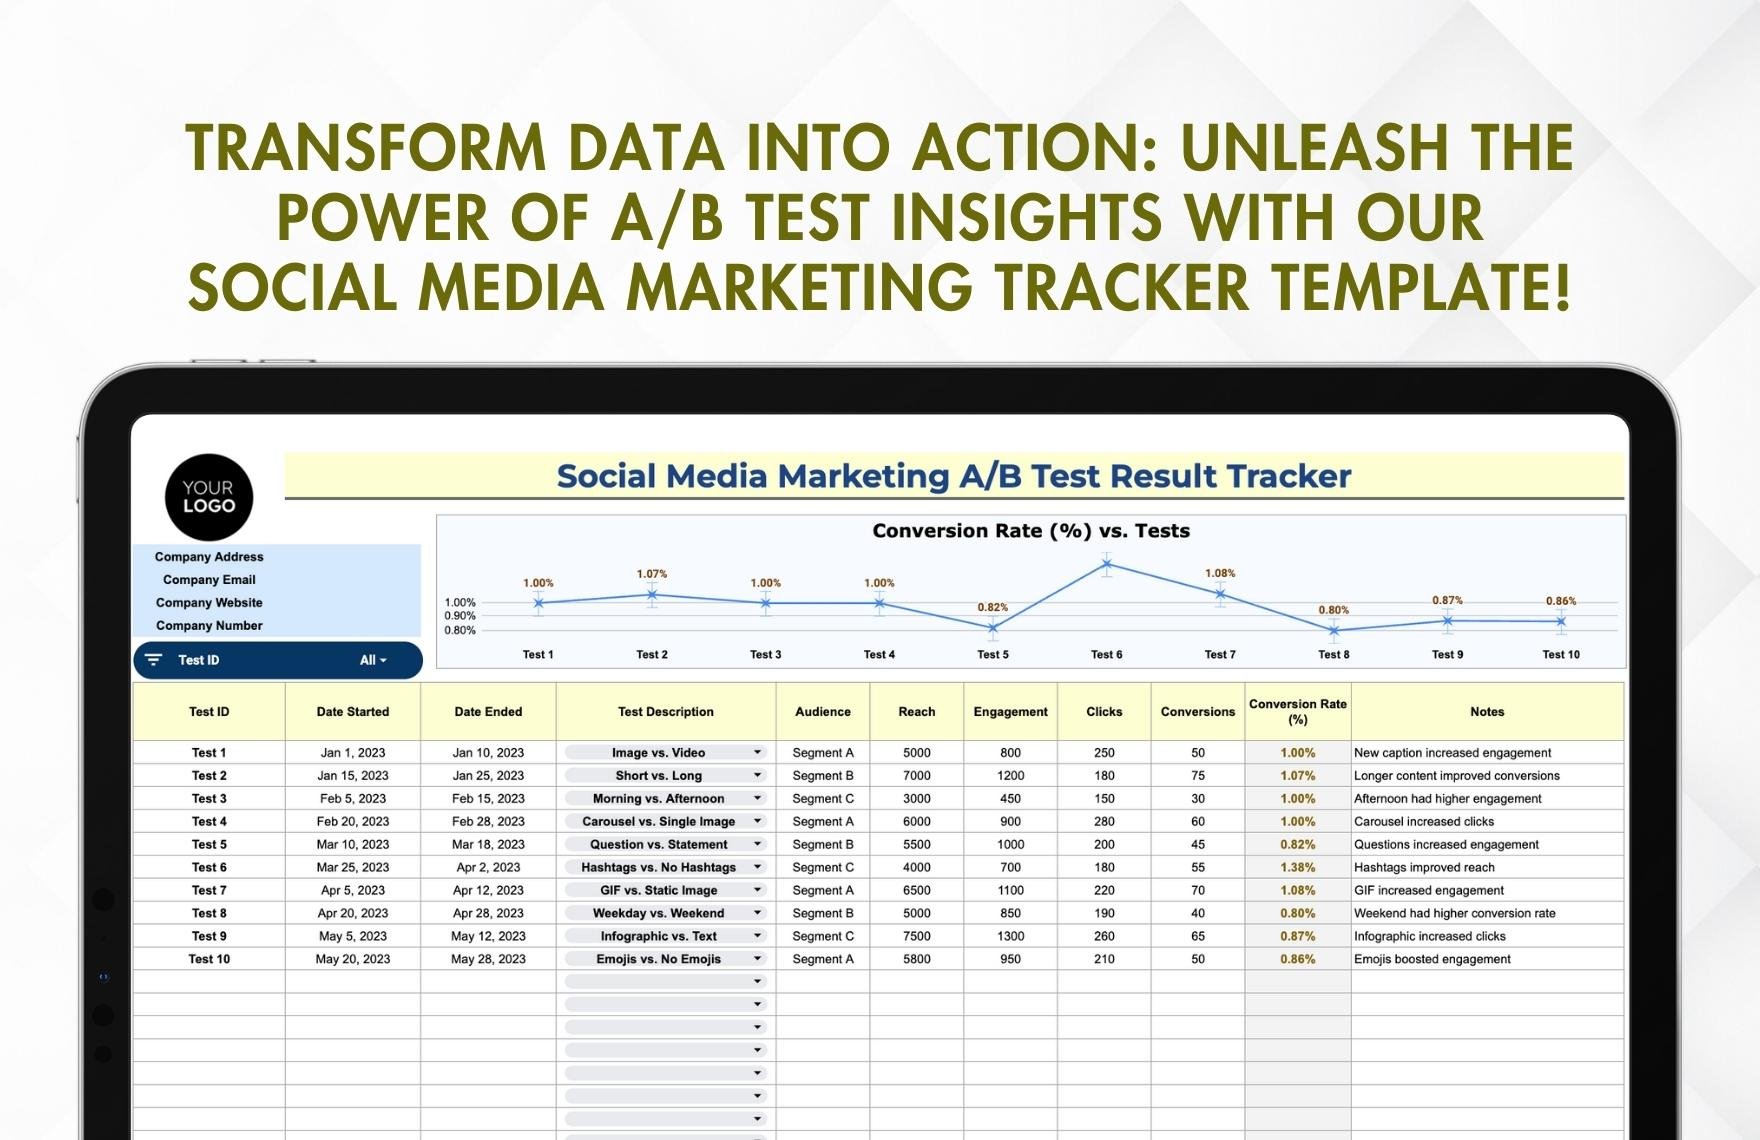 Social Media Marketing A/B Test Result Tracker Template